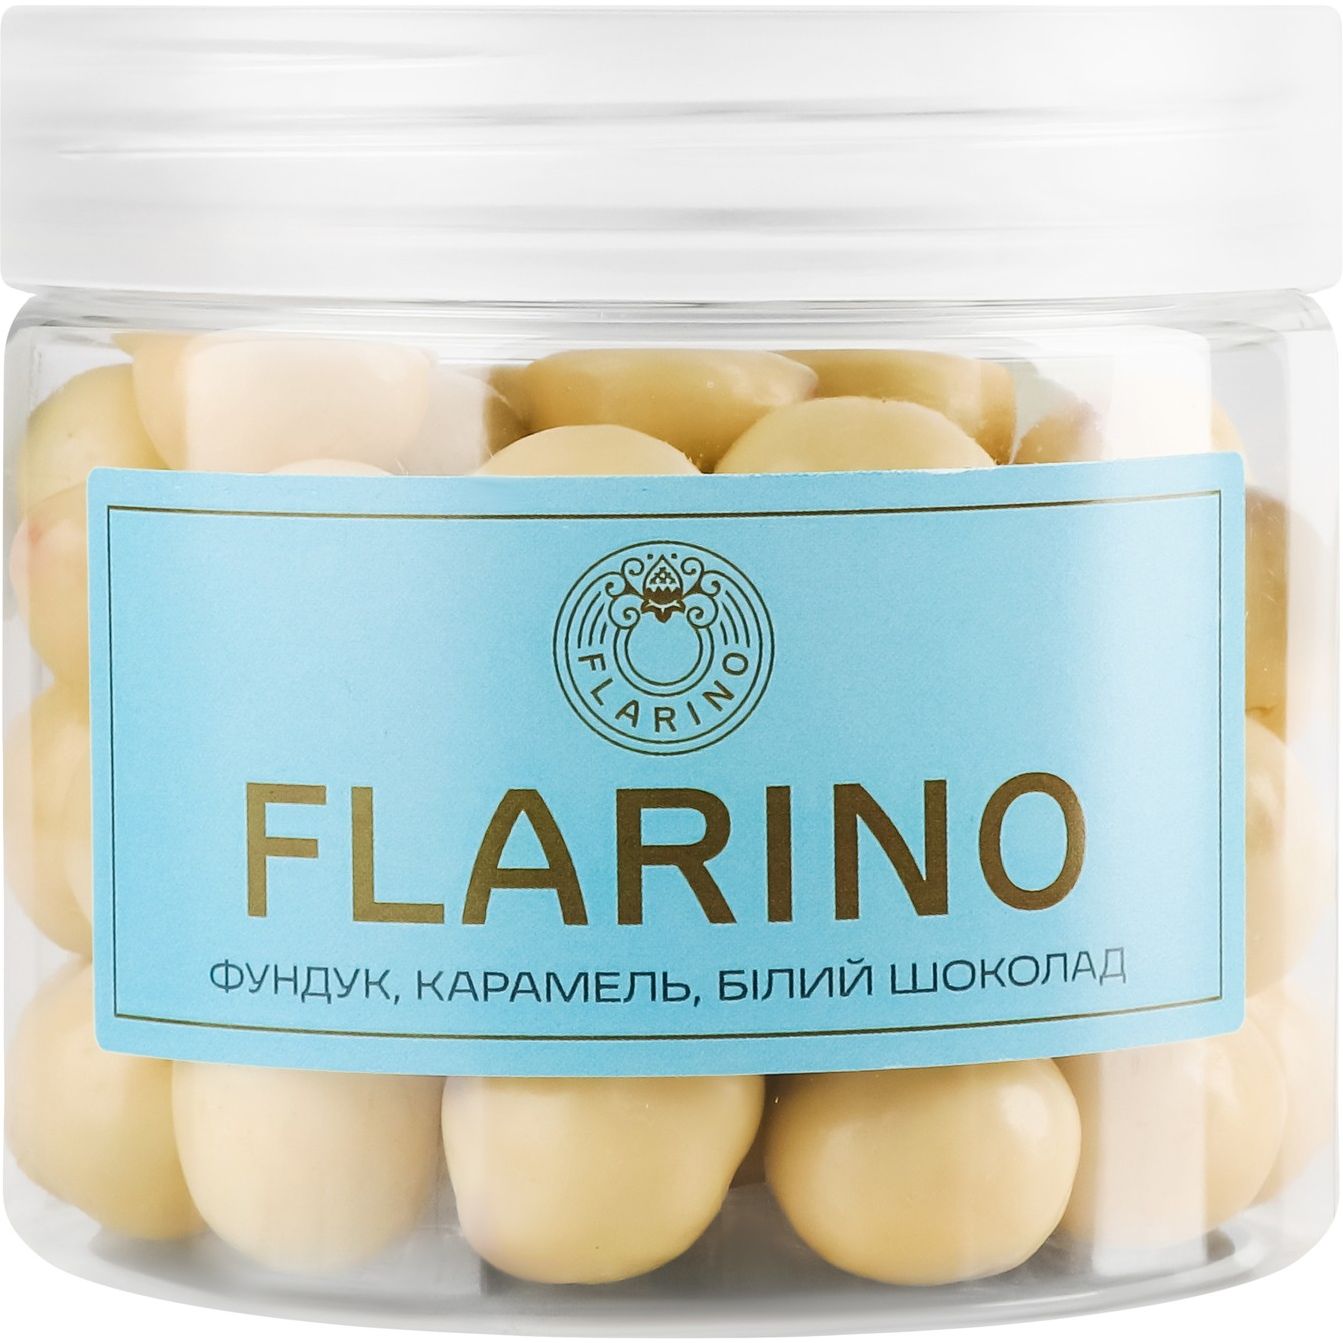 Фундук Flarino в карамелі покритий білим шоколадом, 180 г (924024) - фото 1